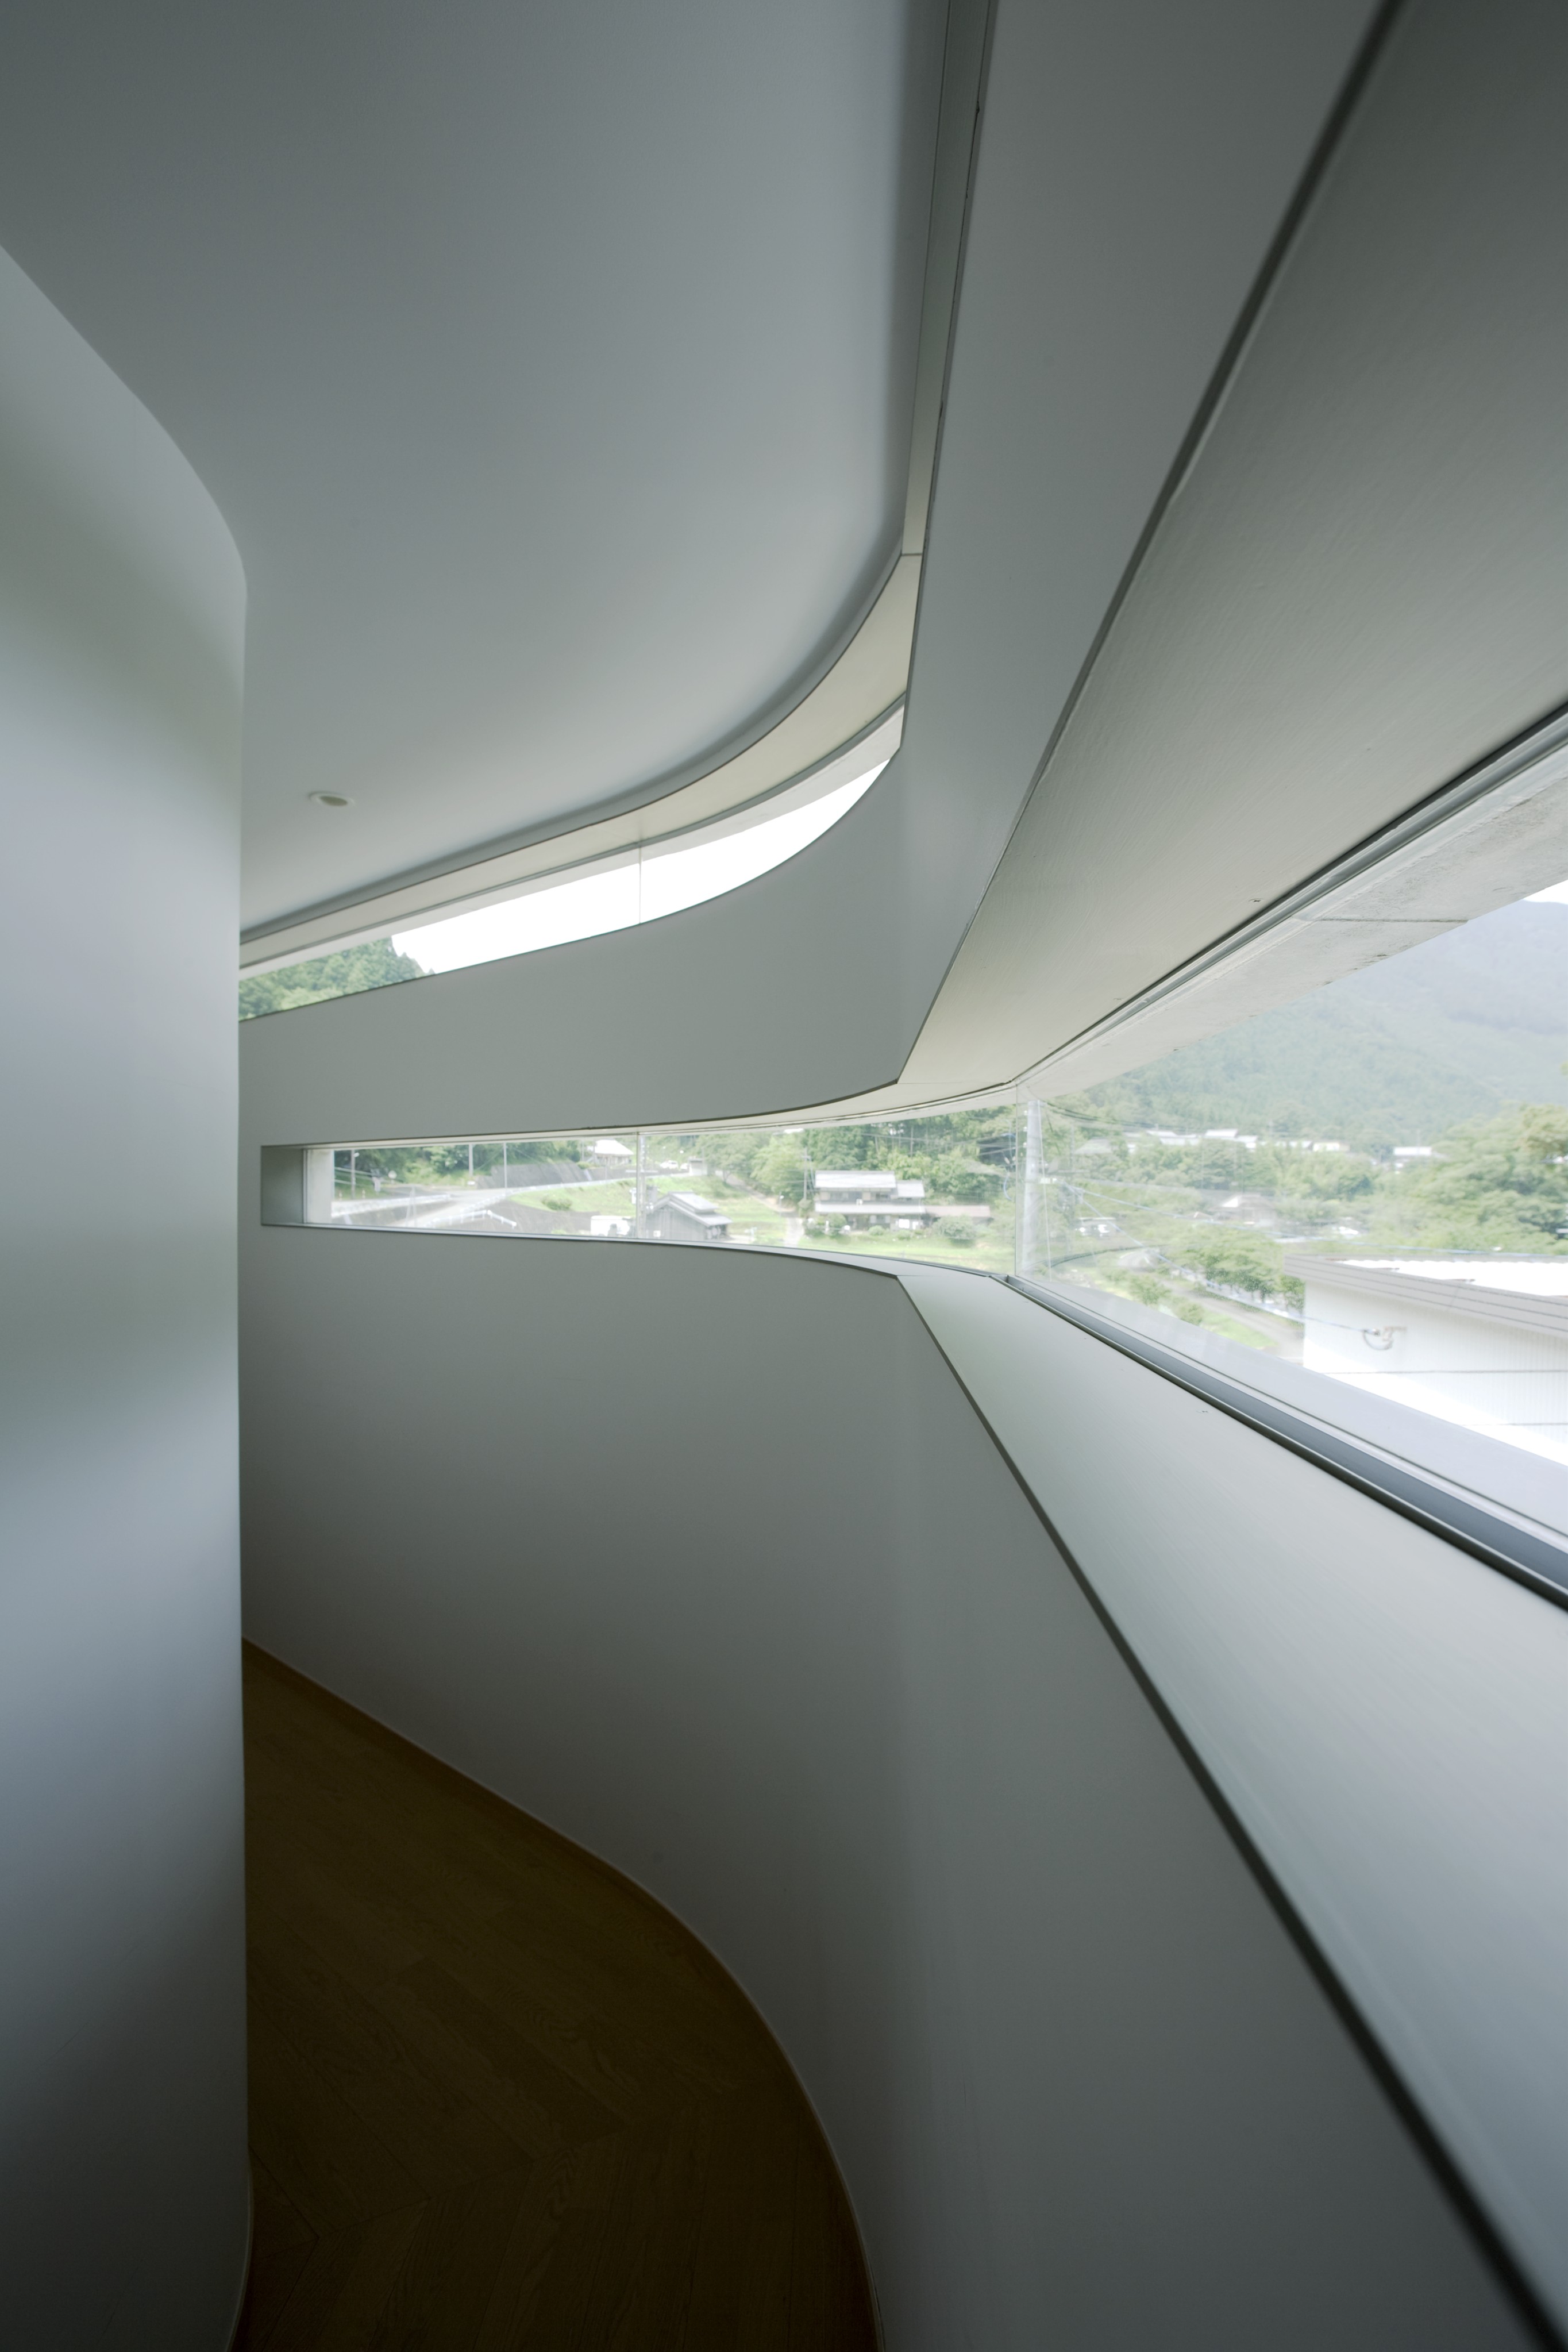 主环绕走廊通过狭缝窗户可以看到广阔的视野，在每一侧的结构中都是弯曲的。